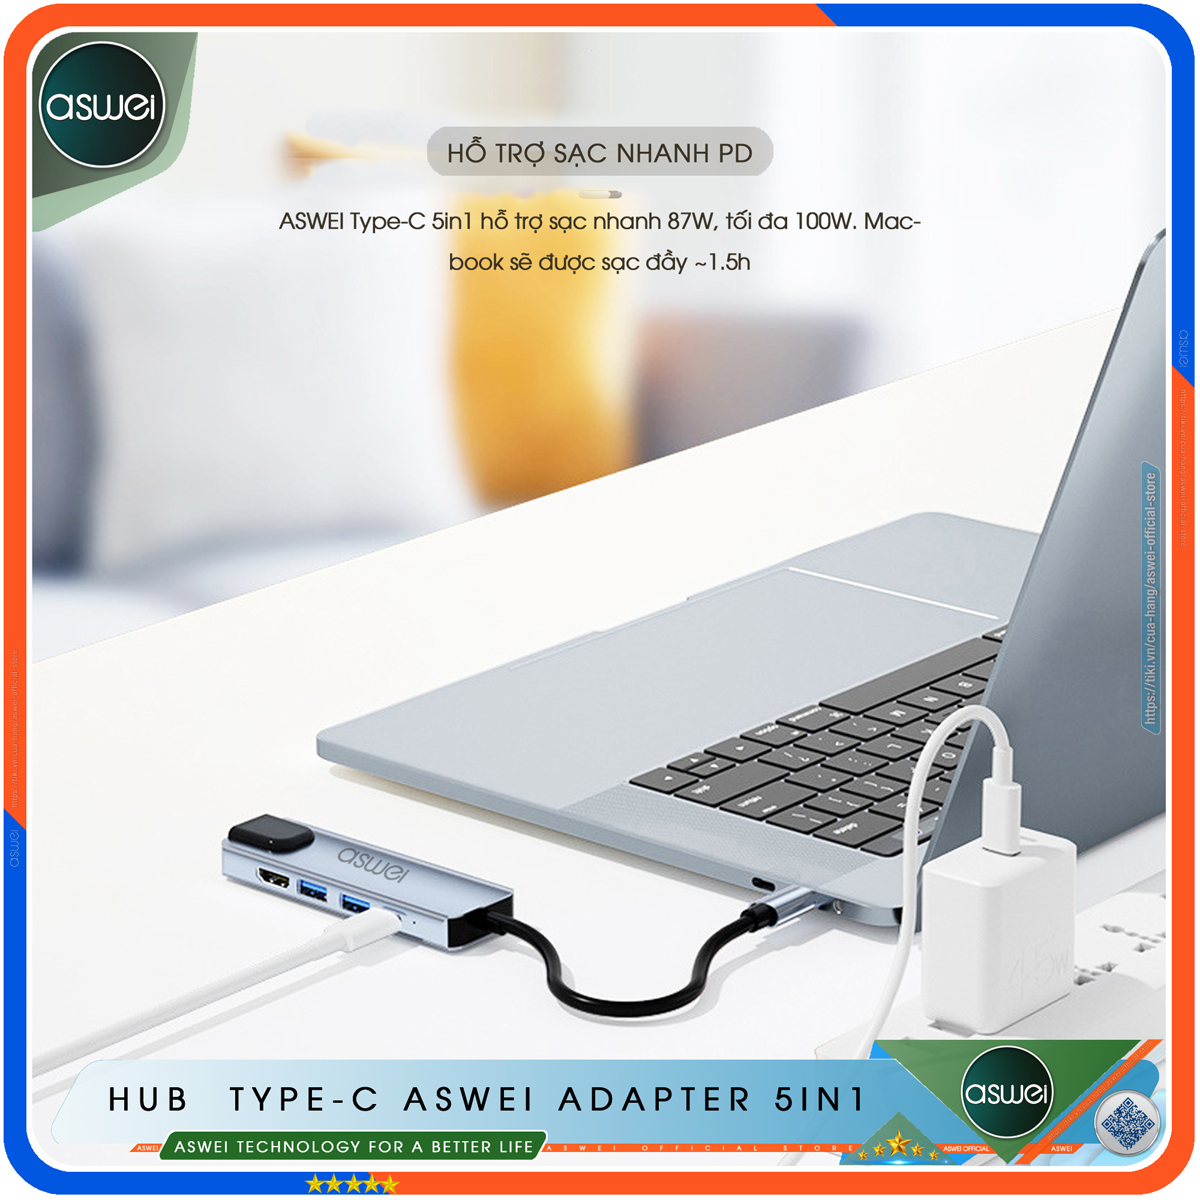 Hub Type C ASWEI 5in1 - Hub Chuyển Đổi USB Type-C To HDMI Chuẩn HDTV - Cổng Mạng Lan / HDMI 4K / USB 3.0 / Sạc Nhanh Type C PD - Kết Nối Nhiều Thiết Bị Với Tốc Độ Cao - Dành Cho MacBook / Tivi / Laptop / PC/ Máy Tính Bảng / Smartphone – Hàng Chính Hãng